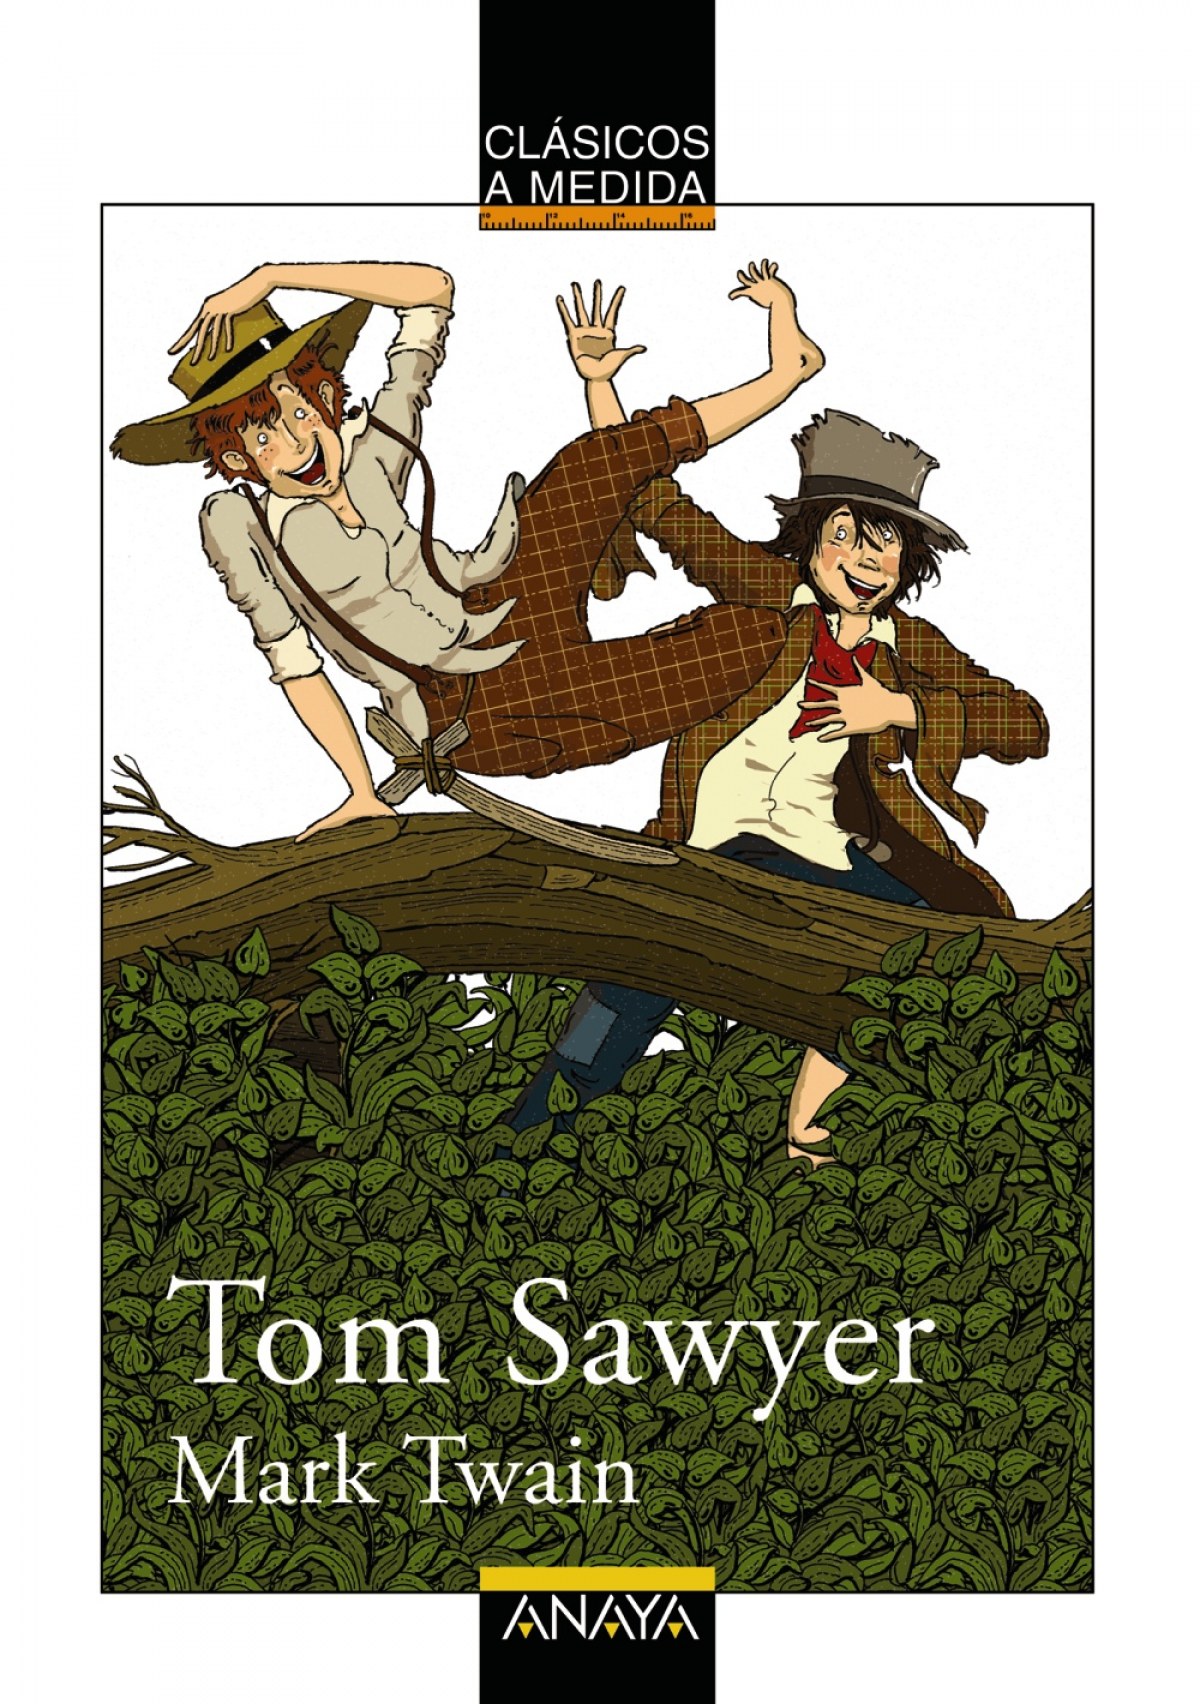 Tom Sawyer - Twain, Mark